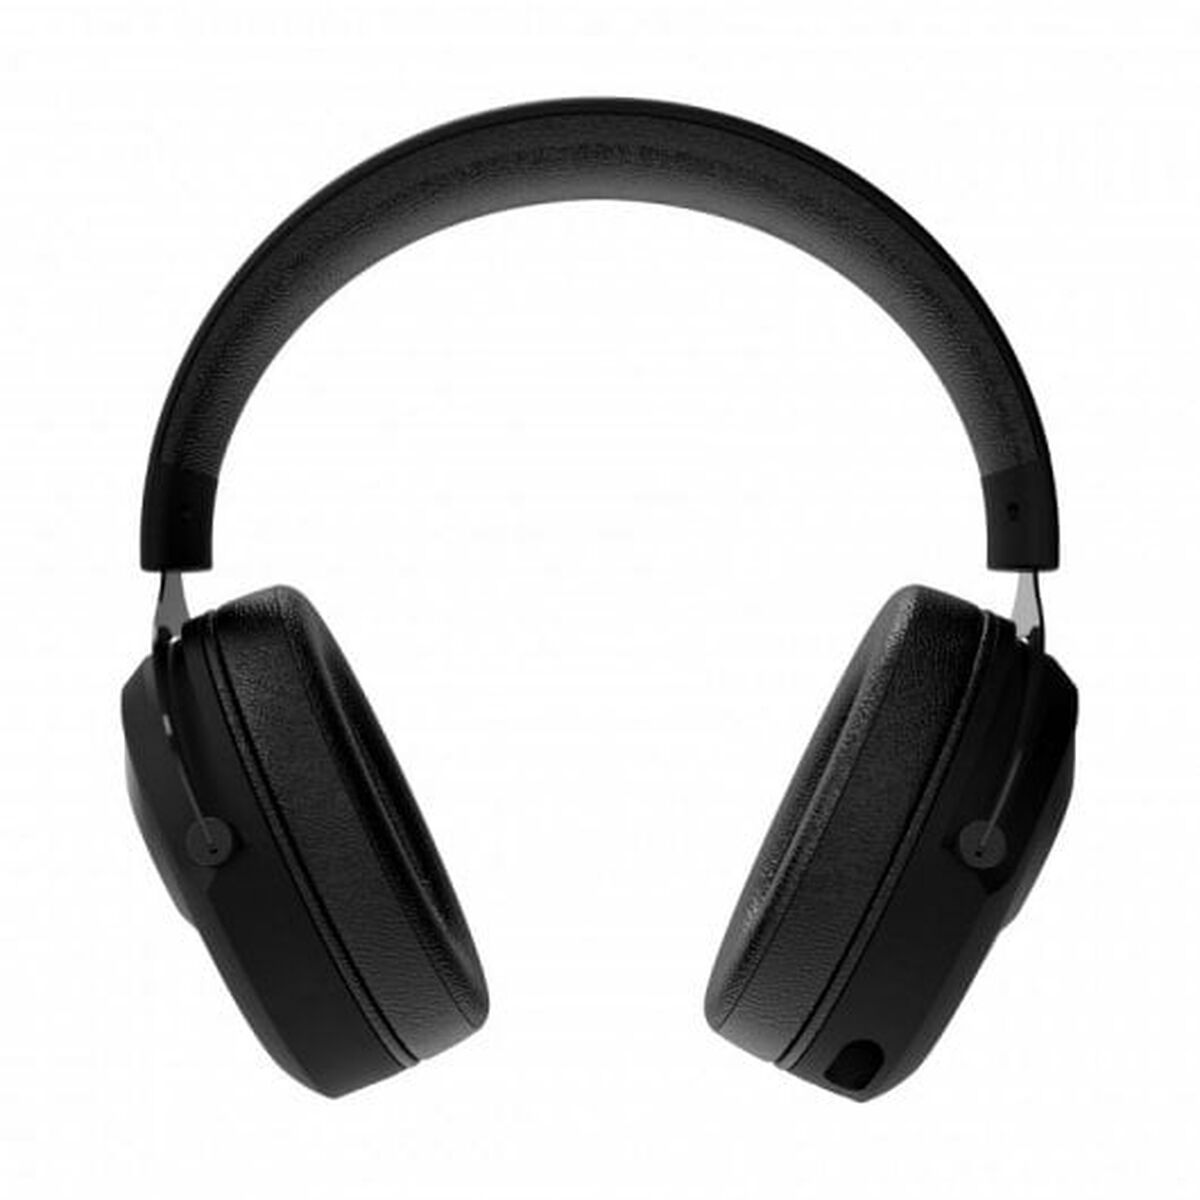 Ακουστικά με Μικρόφωνο Tempest GHS PRO 20 Μαύρο